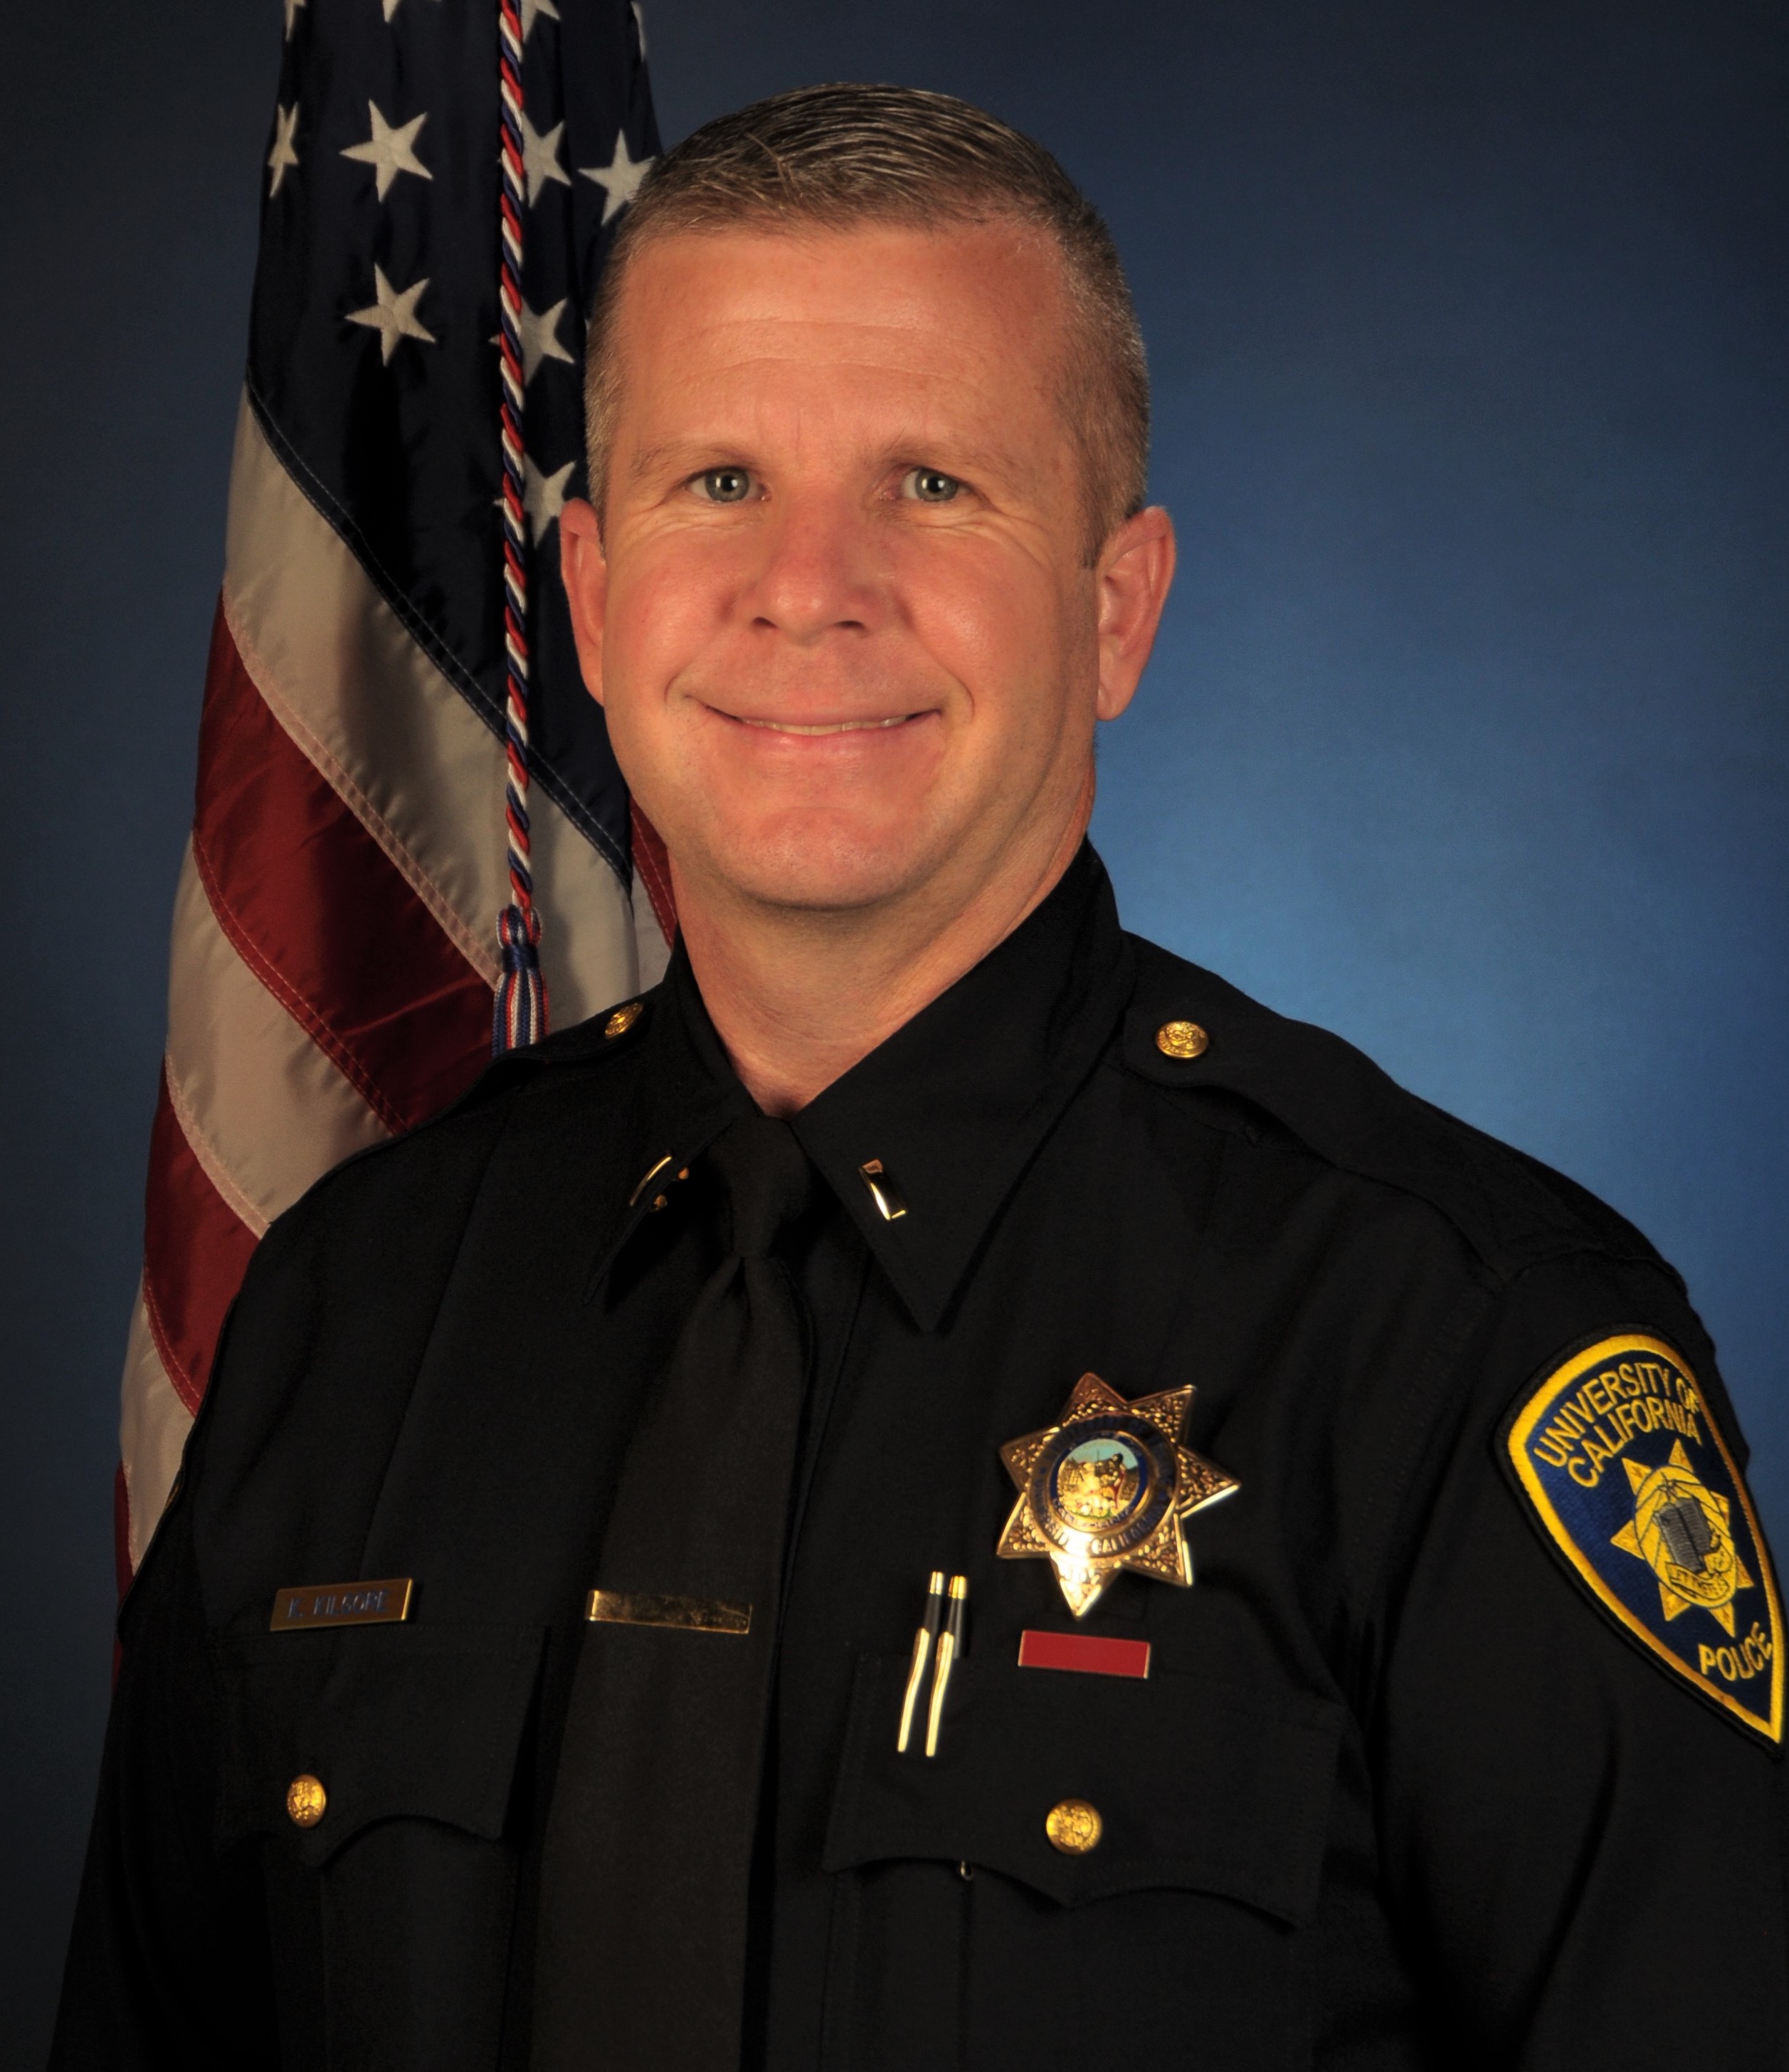 2/16: Sebastopol Names Kevin Kilgore New Police Chief